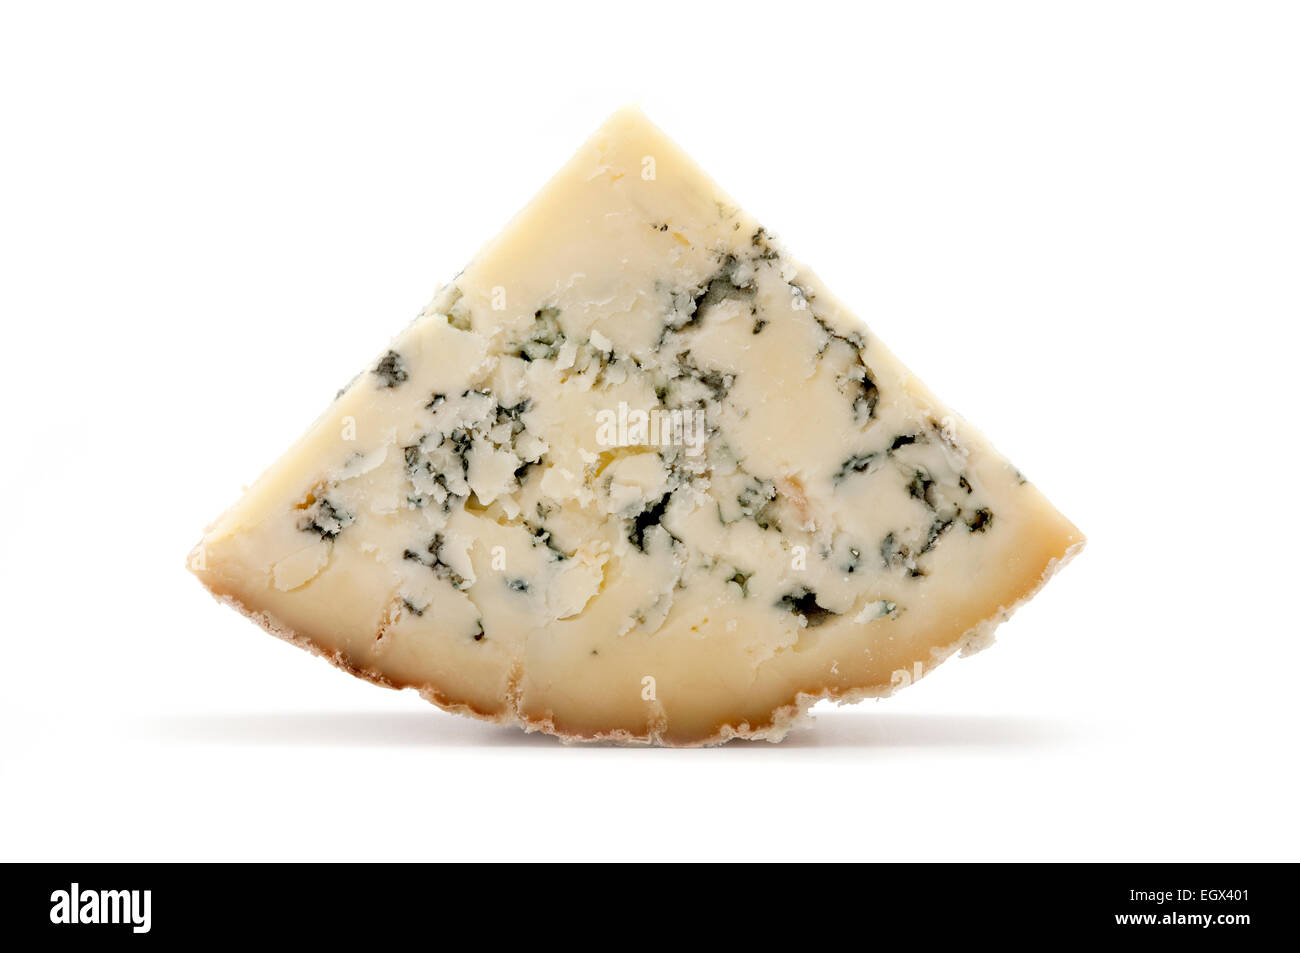 Tranche de fromage stilton bleu sur fond blanc Banque D'Images